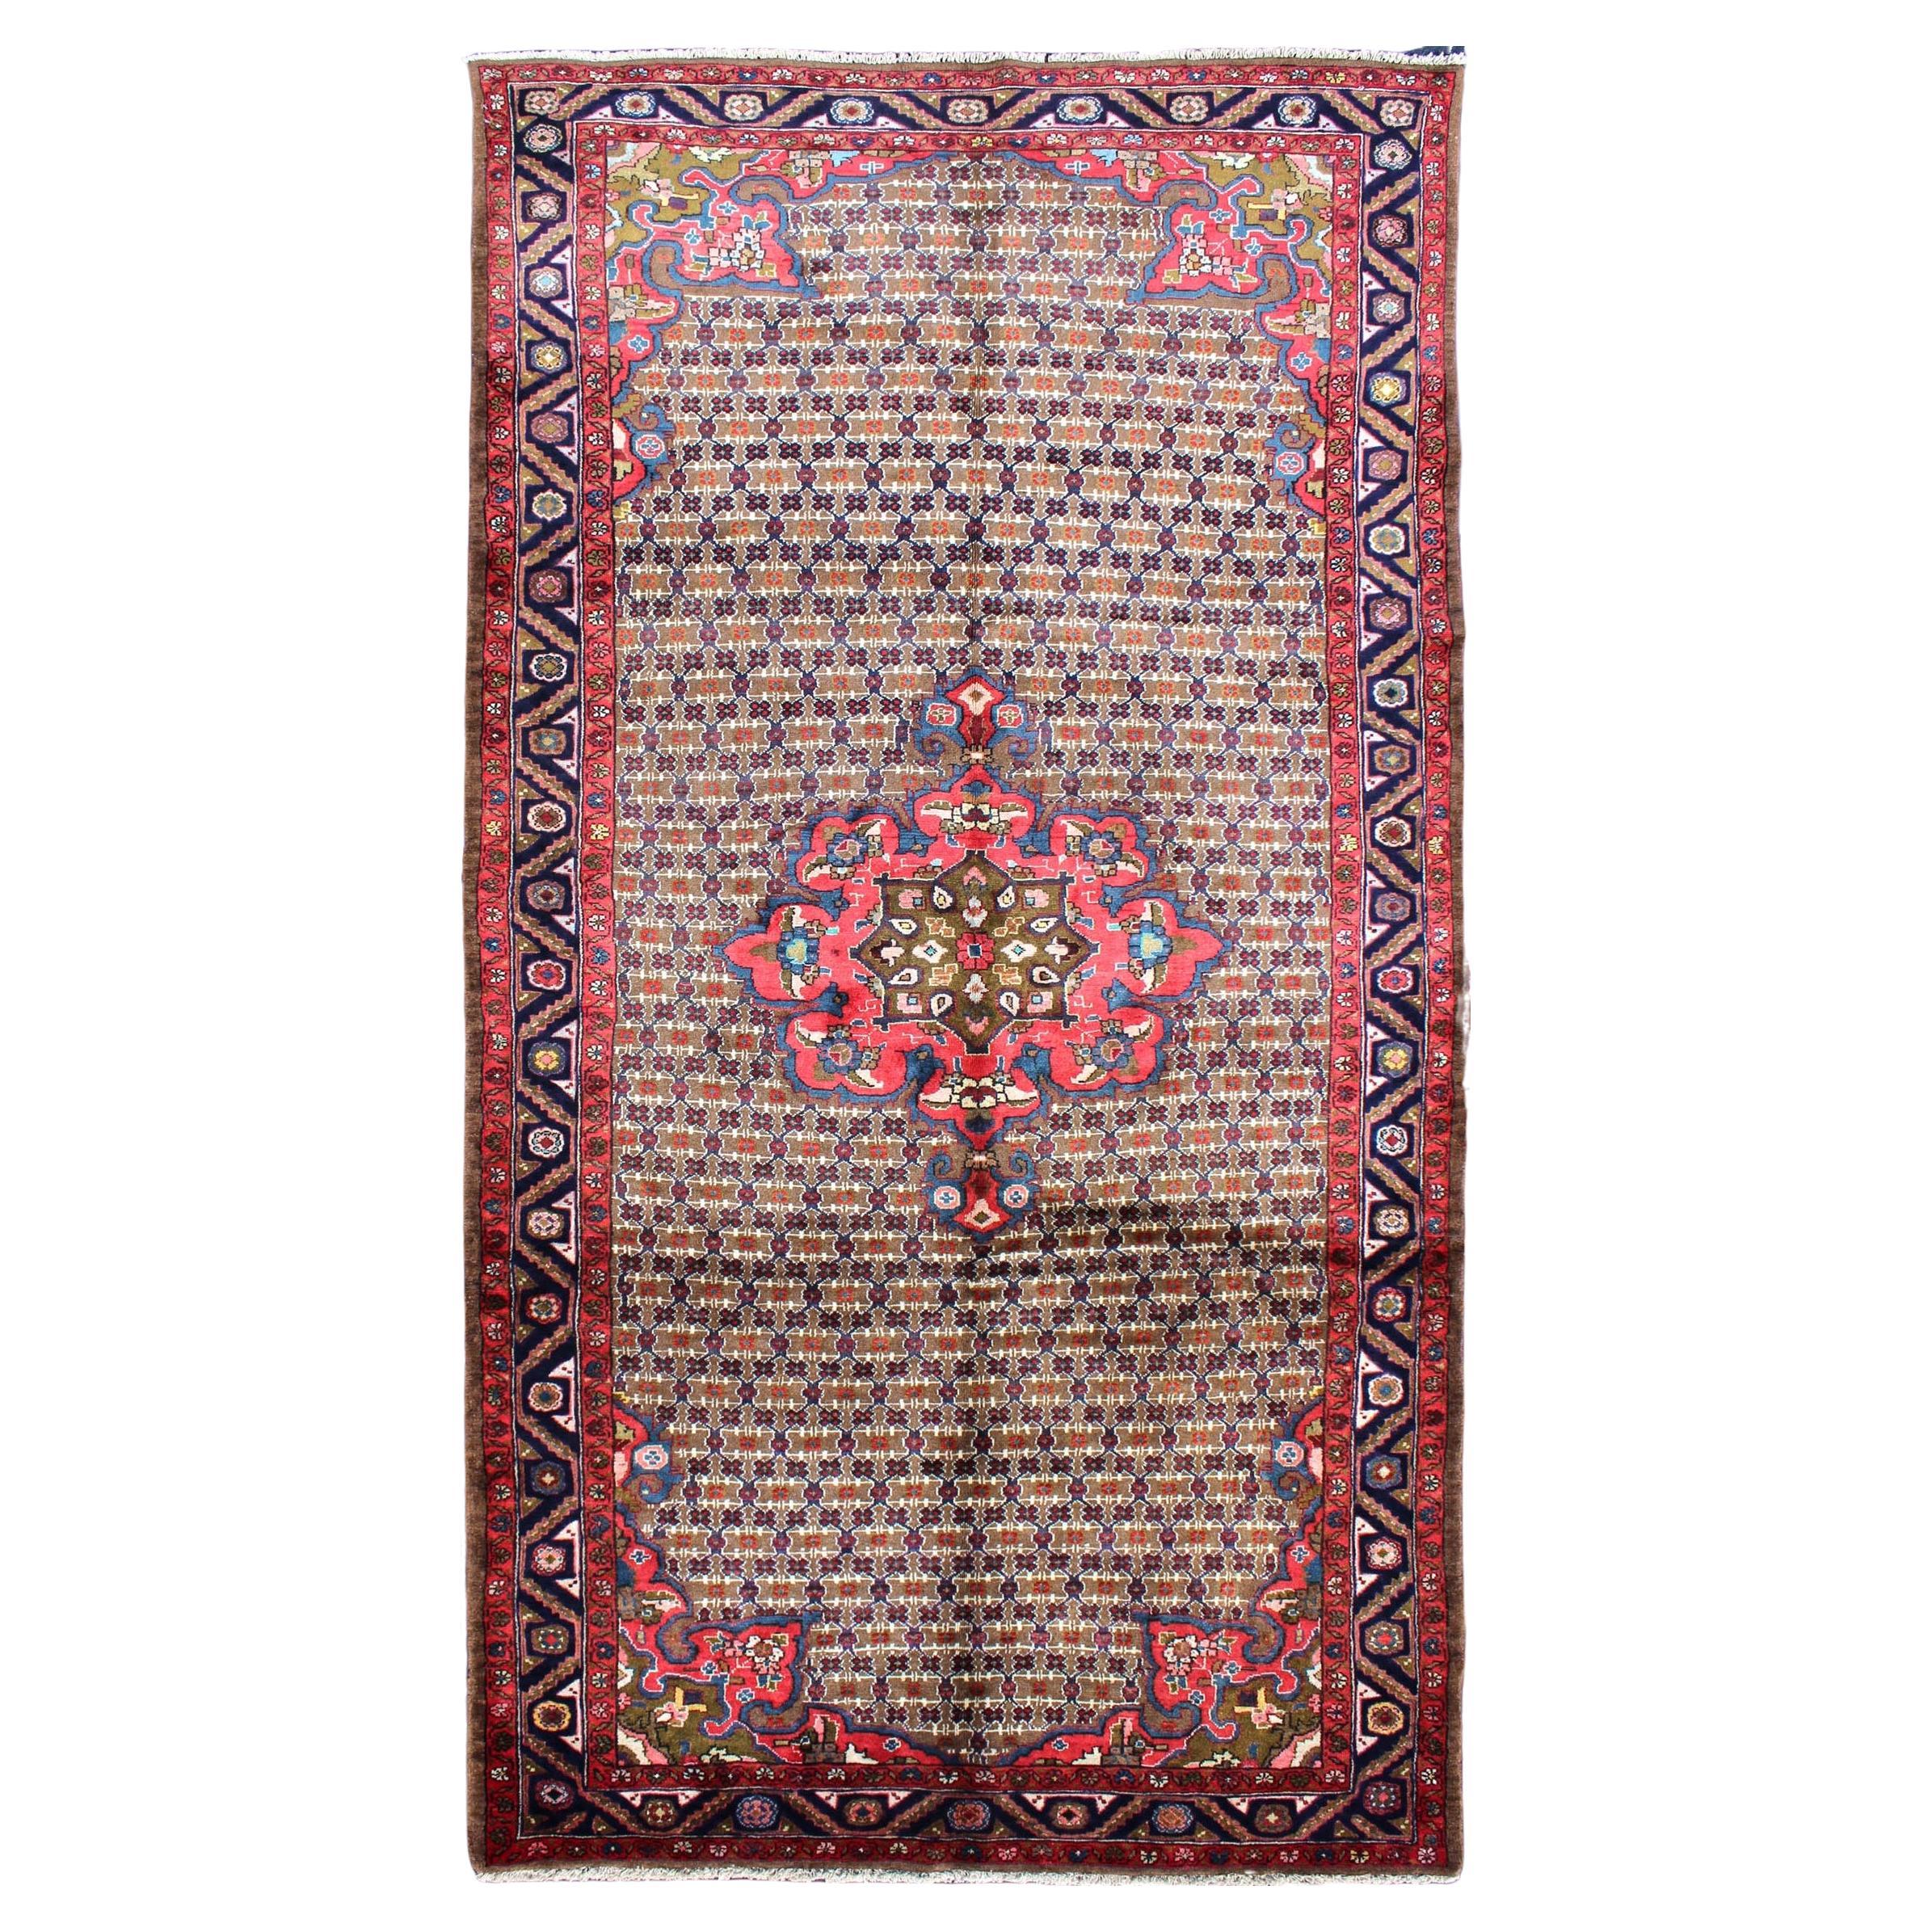 Hamadan-Teppich in Rot und Braun mit geblümtem Medaillon aus Kamelhaar, Persische Galerie